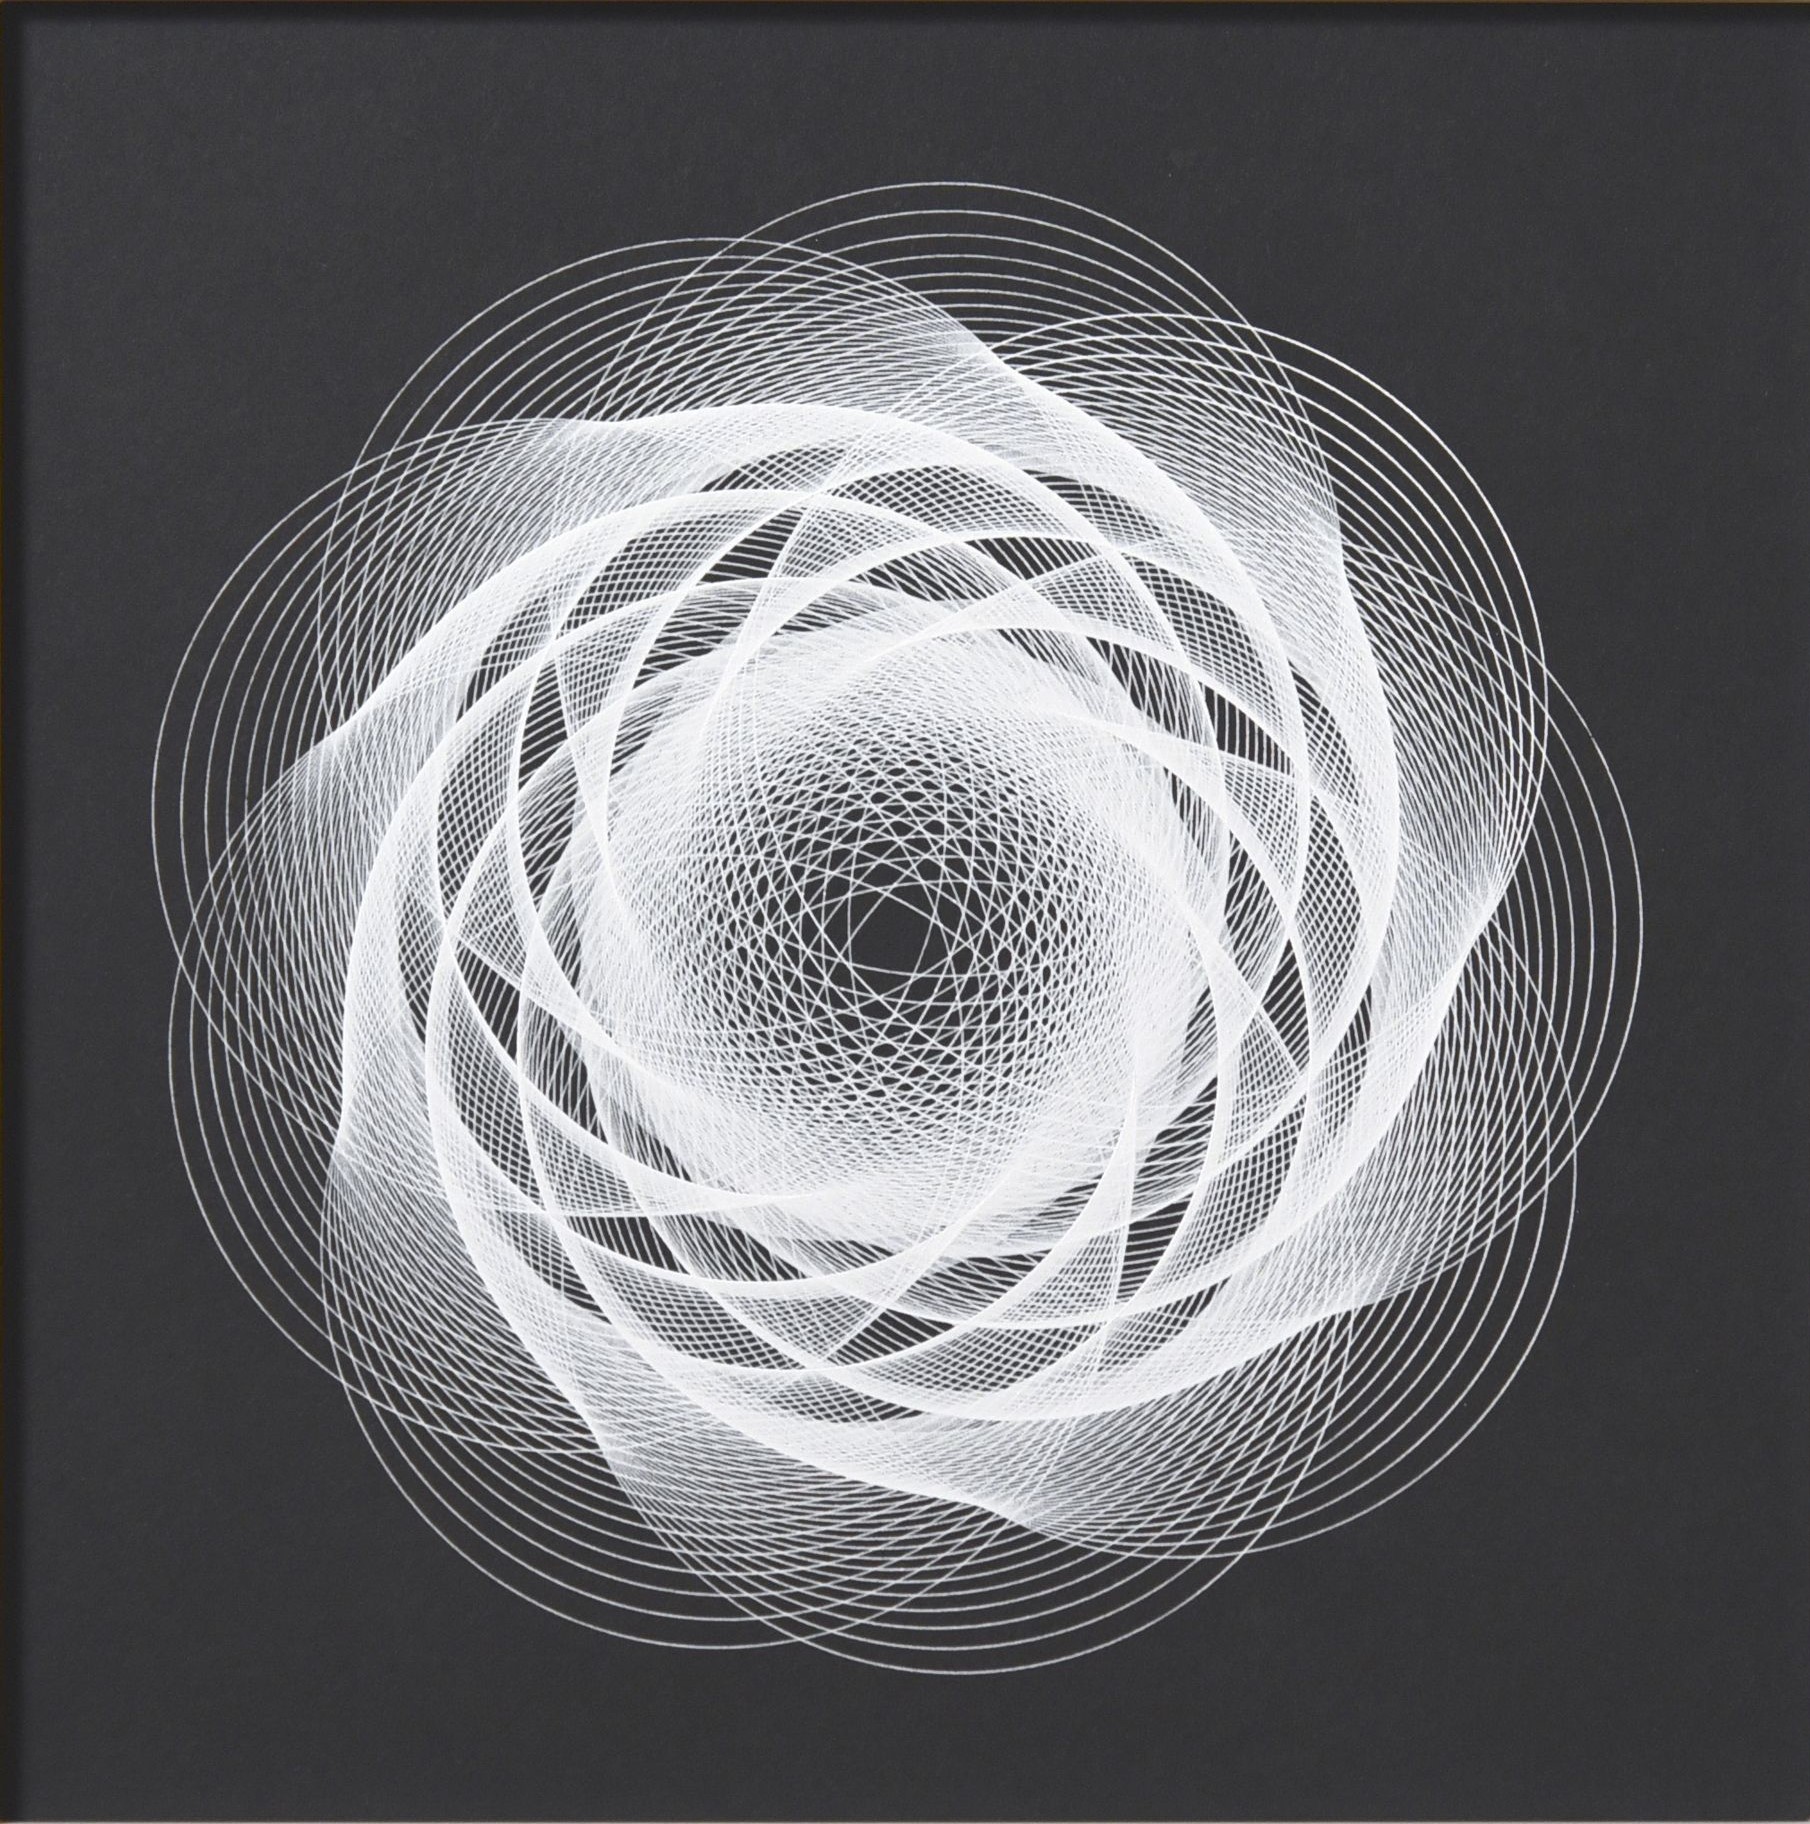 Hvide spiraler/cirkler på sort baggrund. Tager form af en mandala.